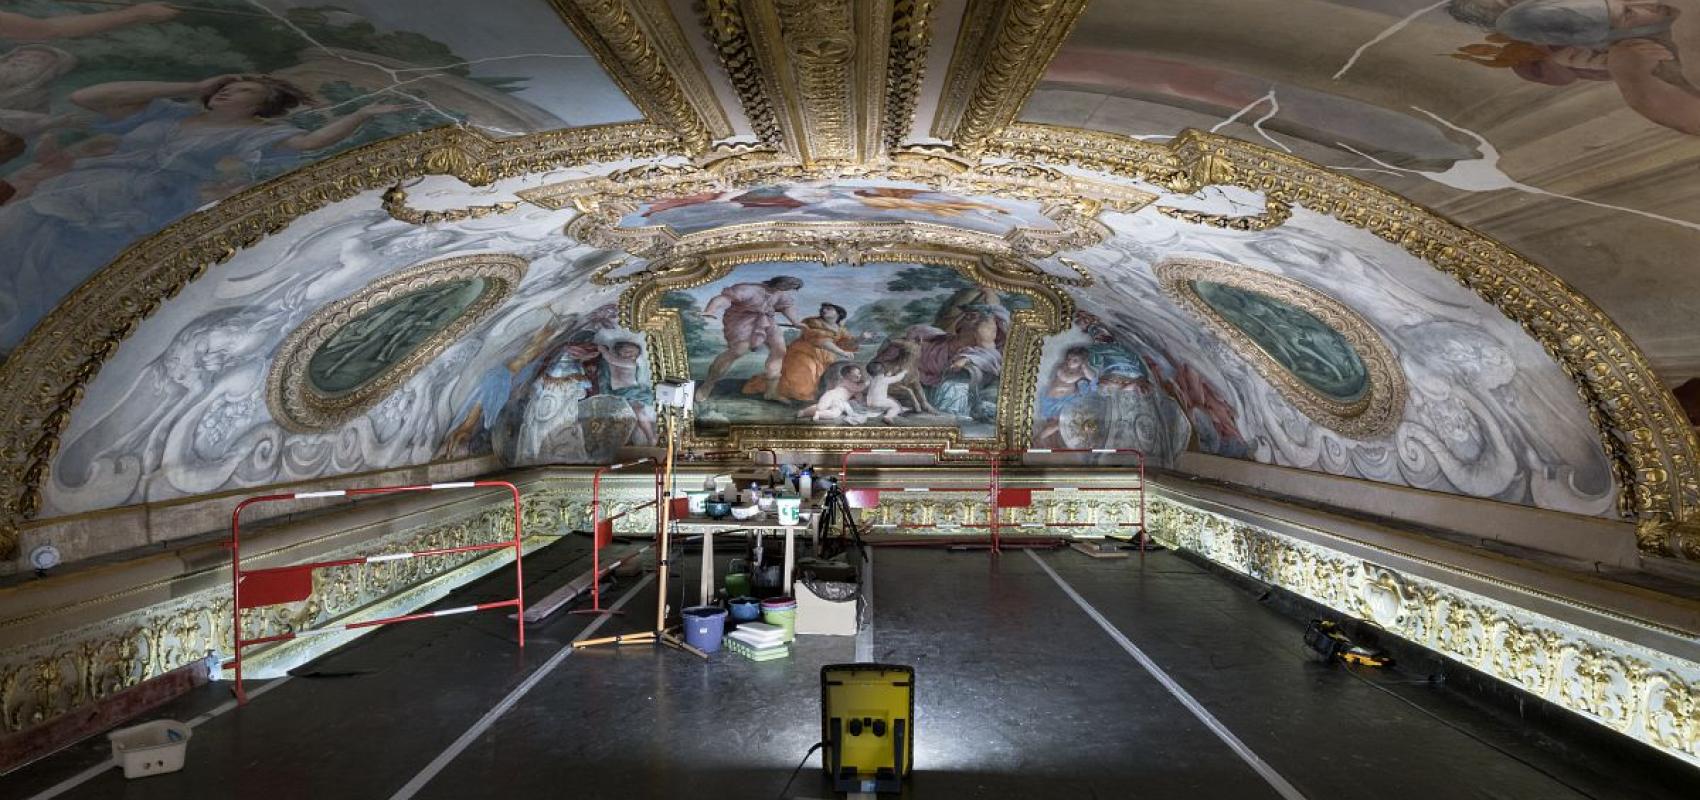 Plafond de la Galerie Mazarine en cours de rénovation -  - © Jean-Christophe Ballot / BnF / Oppic